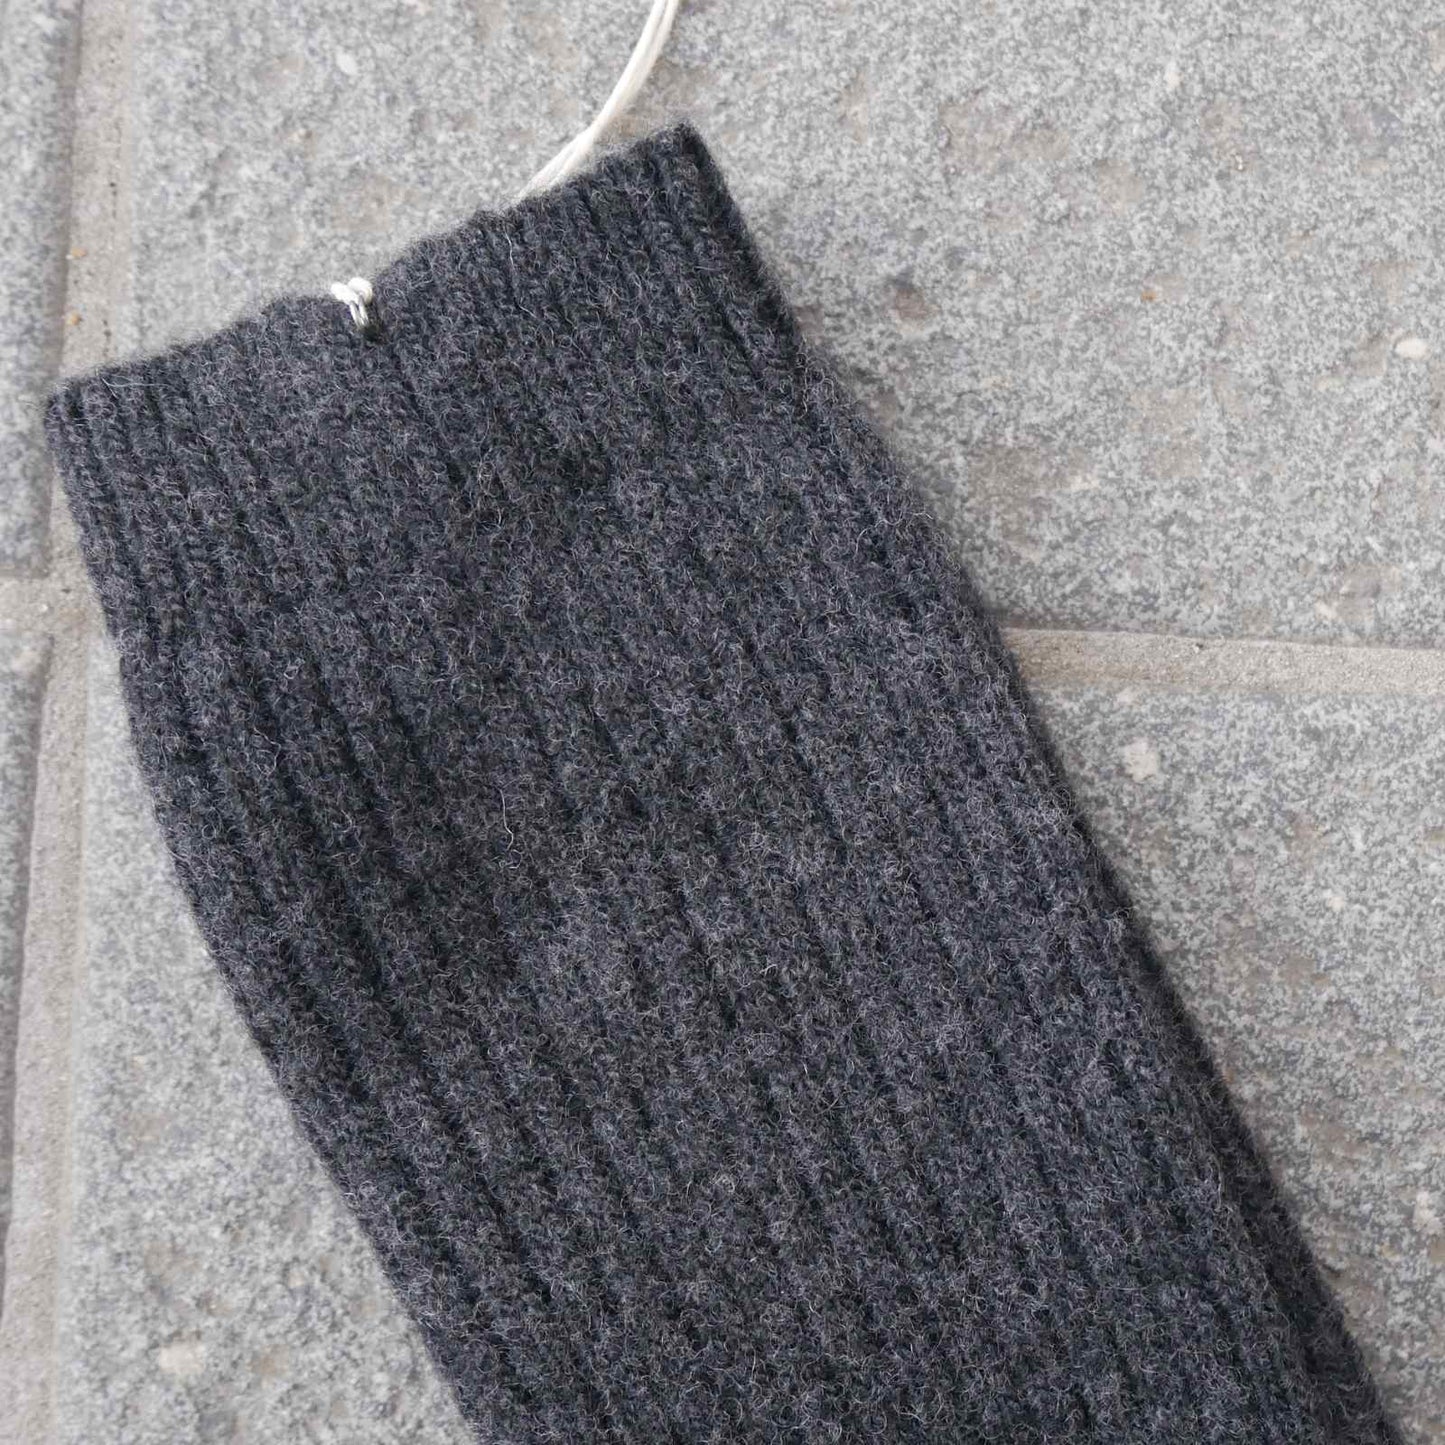 Rib kant på grå uld sokker fra Gorridsen